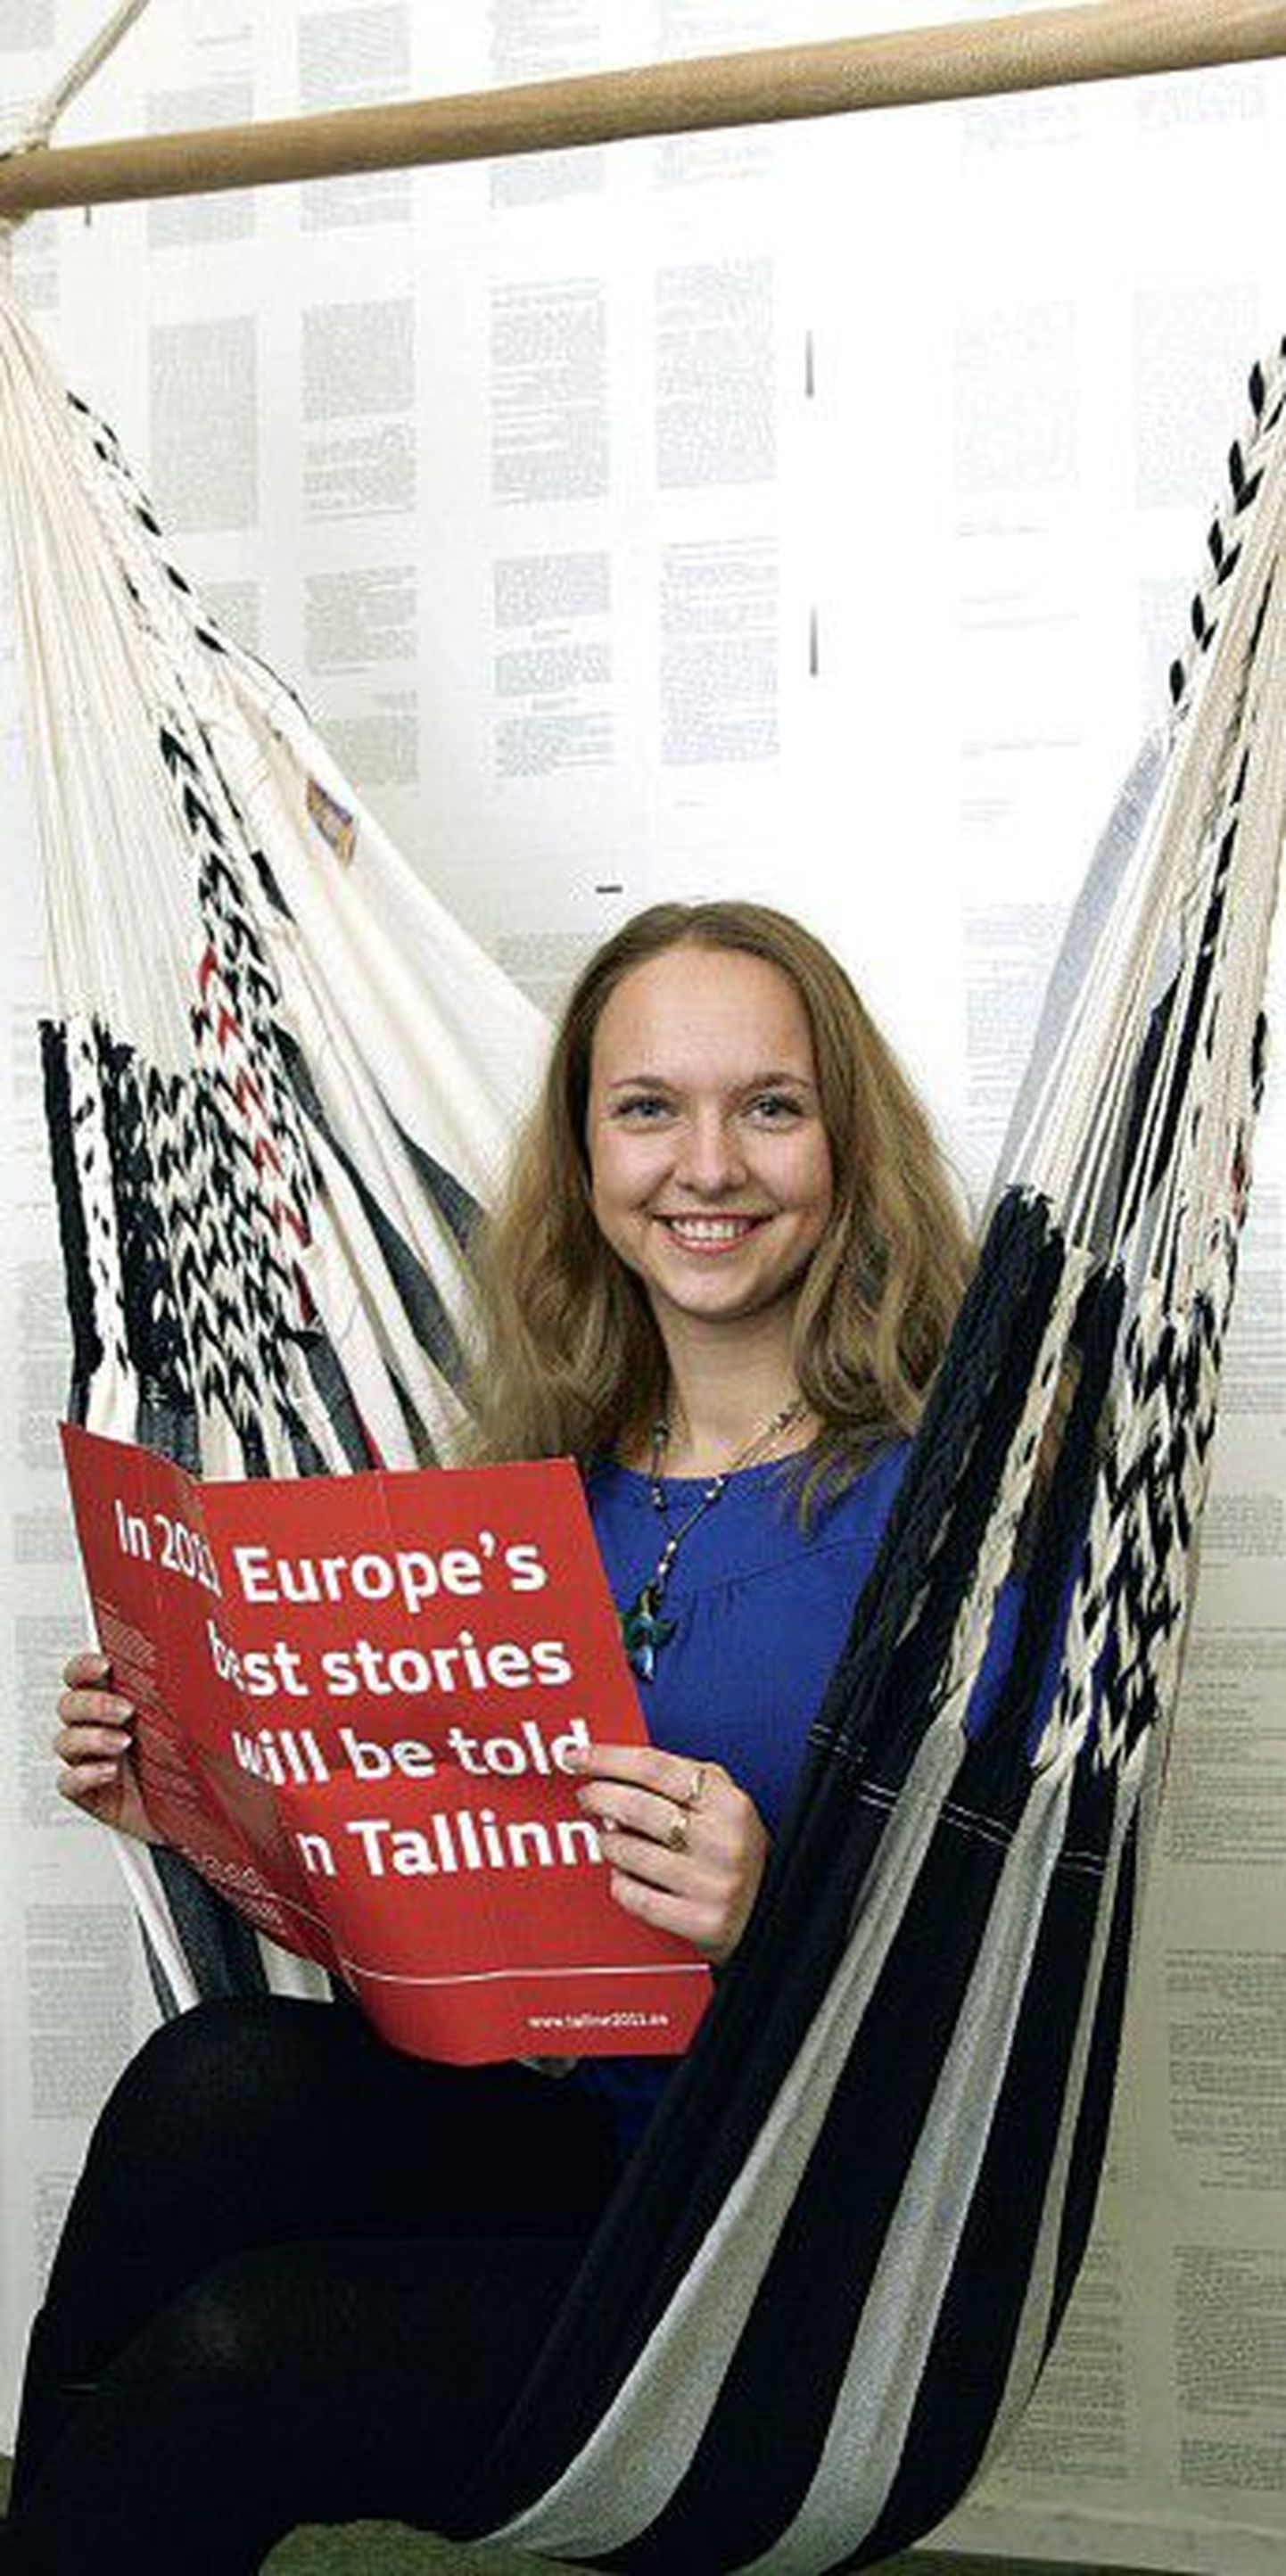 По словам специалиста по связям с общественностью «Таллинн 2011» Ольги Григорьевой, они ждут инициативы не только жителей Таллинна, но и всей Эстонии.